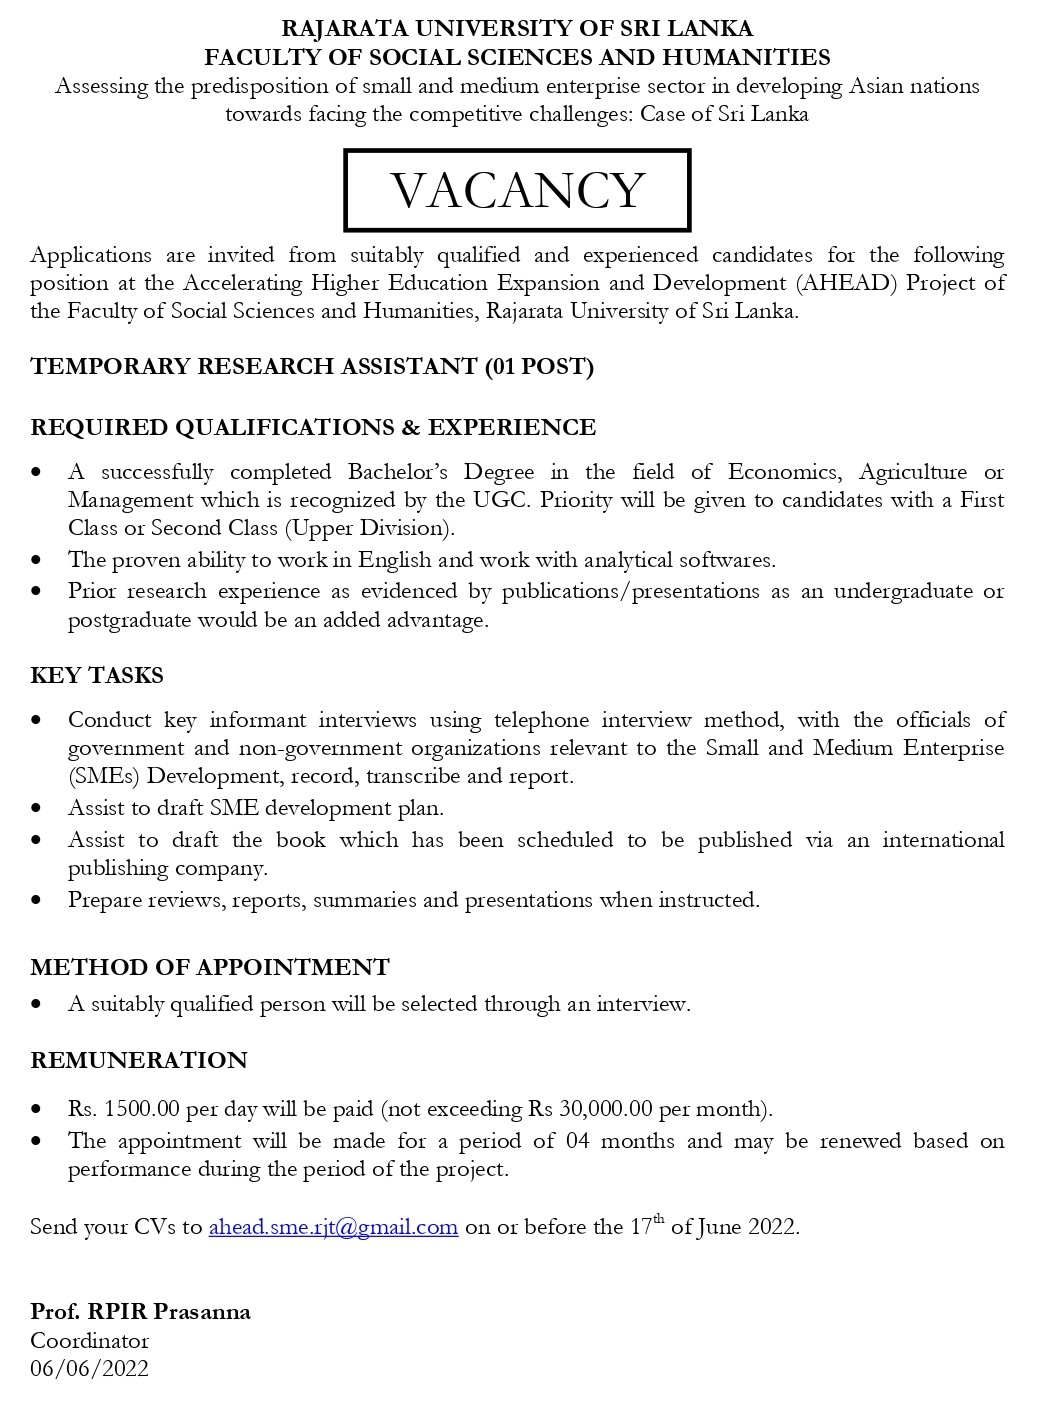 Temporary Research Assistant Vacancies 2022 - Rajarata University Jobs Vacancies